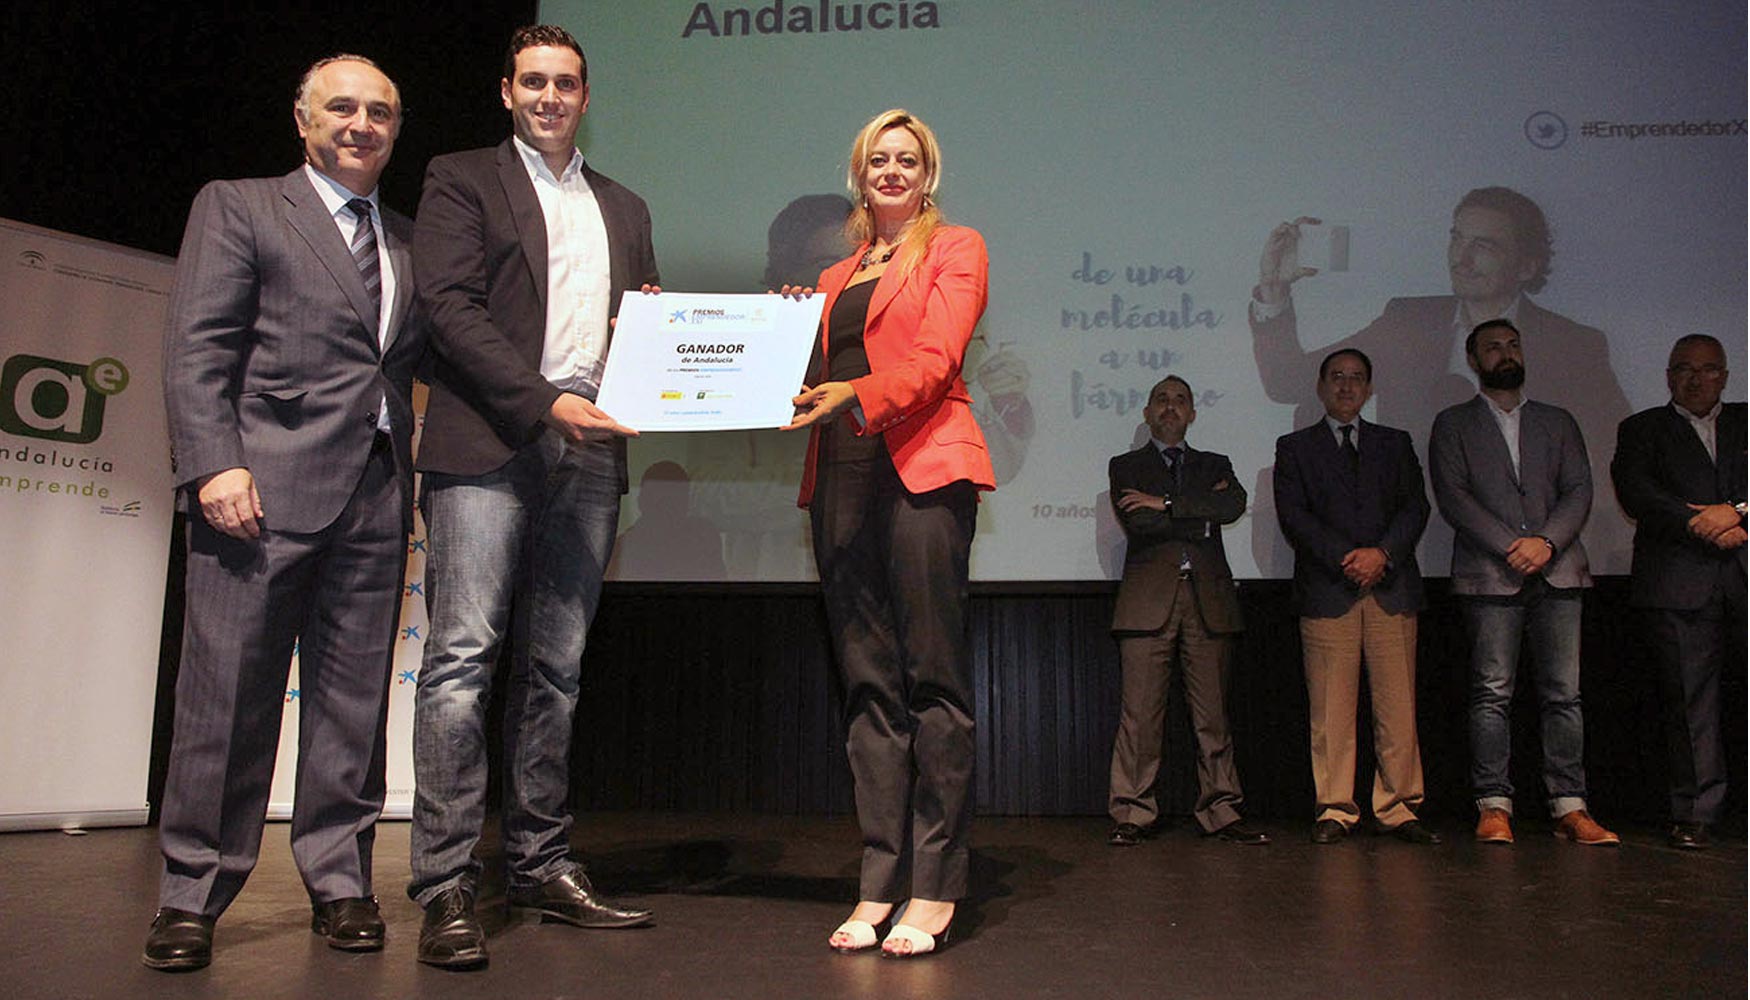 La entrega de premios fue presidida por la directora gerente de Andaluca Emprende, Montserrat Reyes...